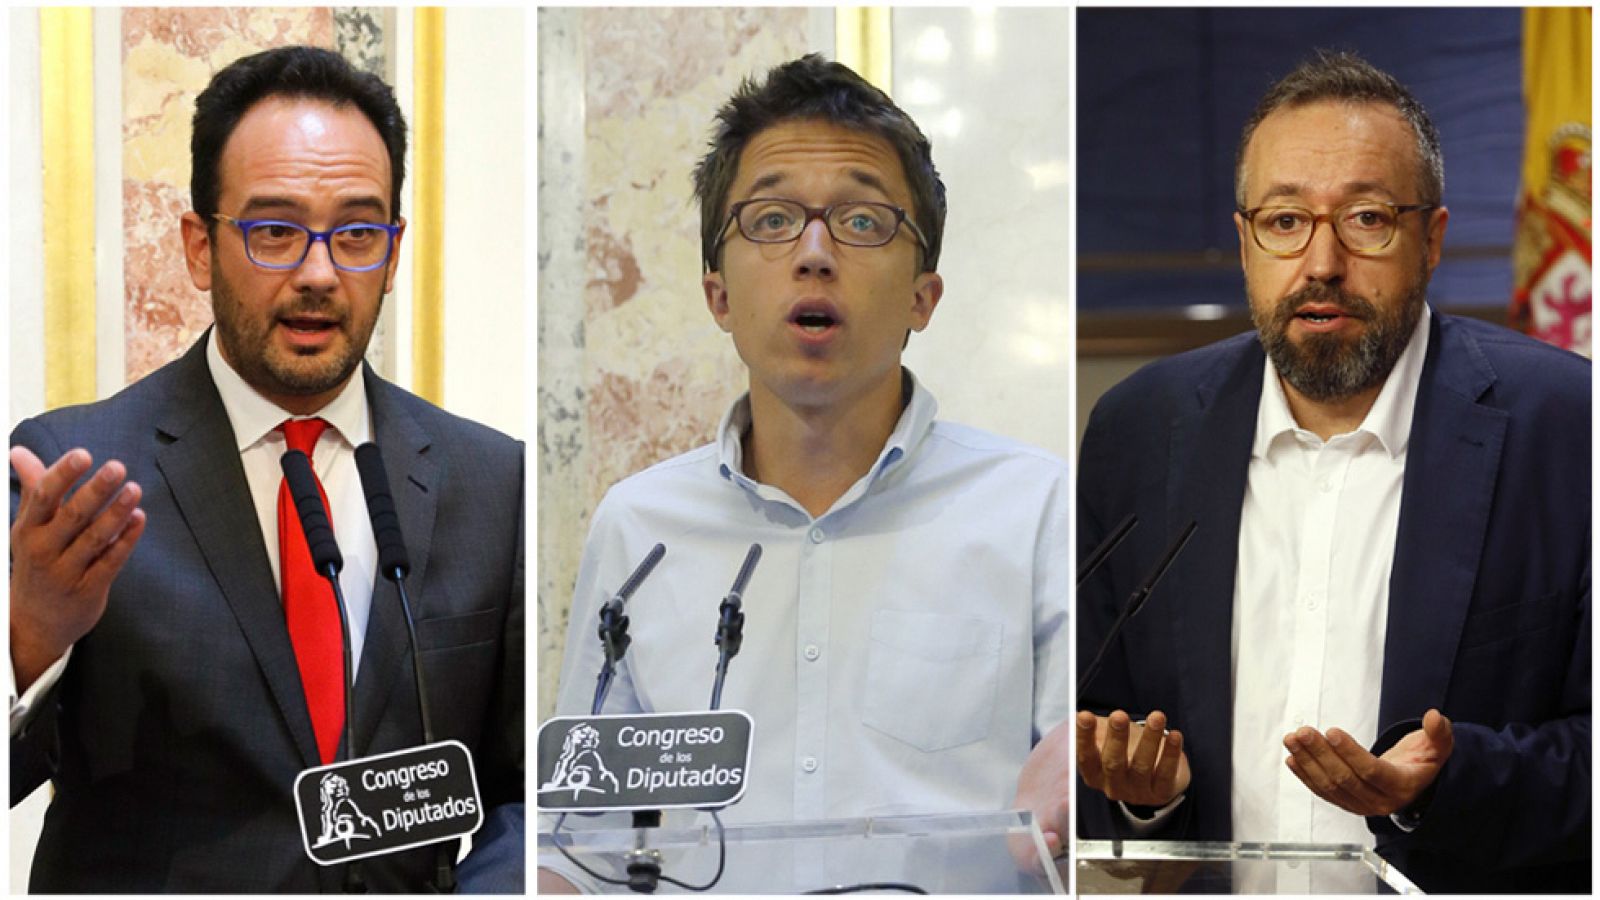 Los principales grupos critican el "desapasionado" discurso de investidura de Rajoy